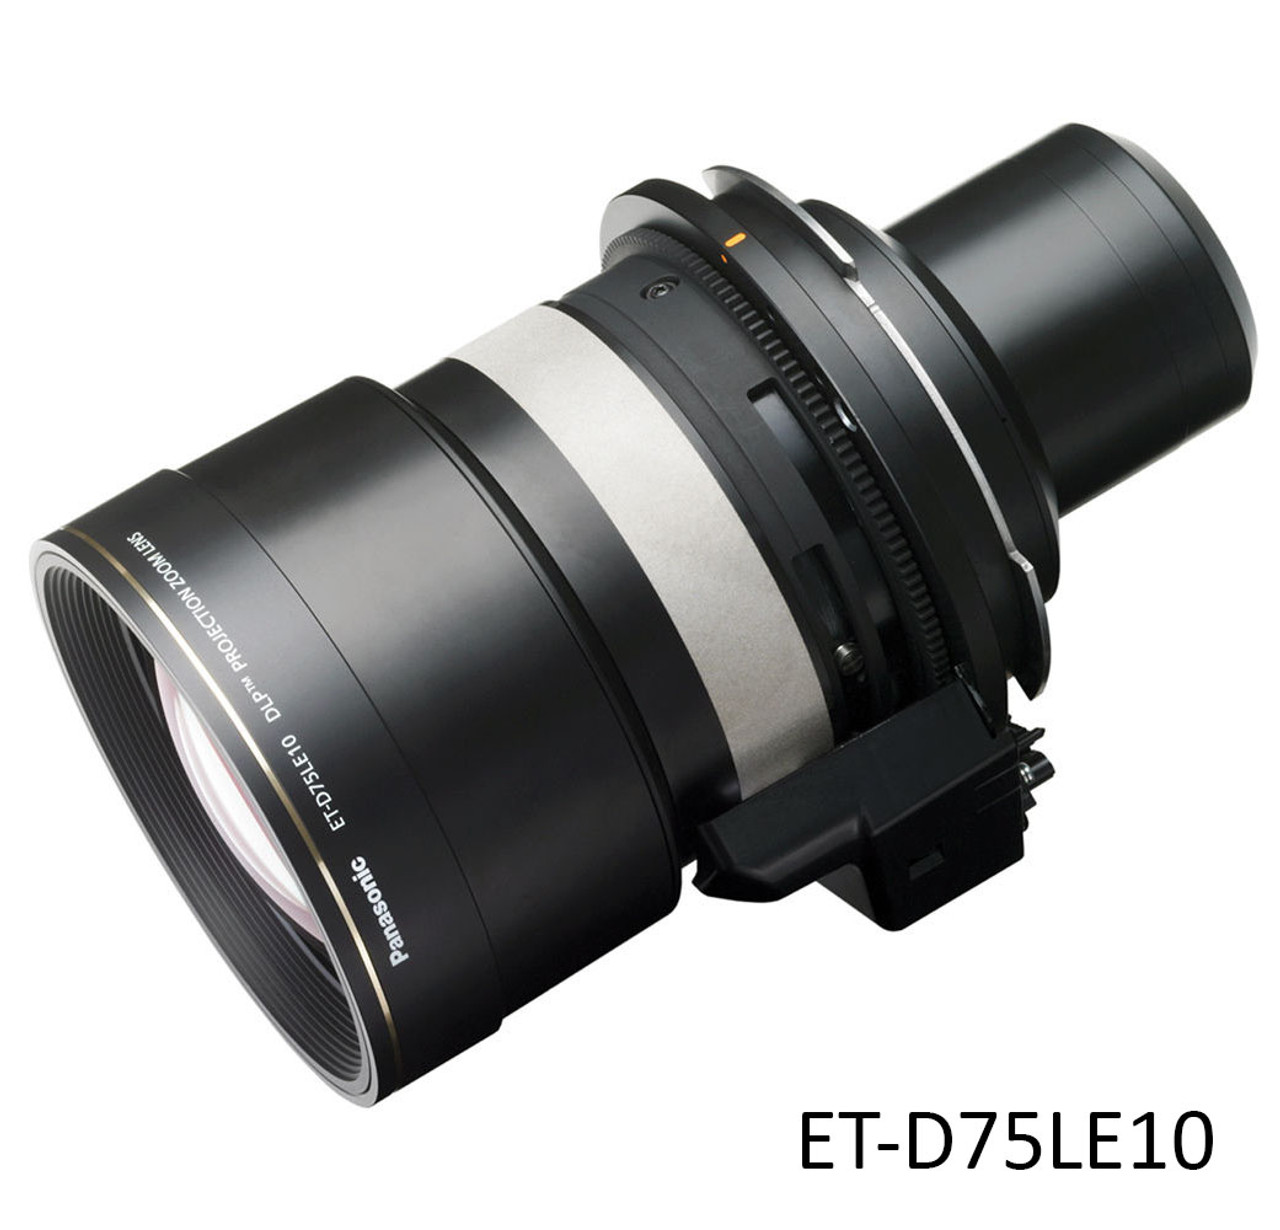 Panasonic Projector Lenses to Suit PT-DZ12000, D12000, DW100, DZ110X, DS100X, DW90X, DZ21, DS20, DW17